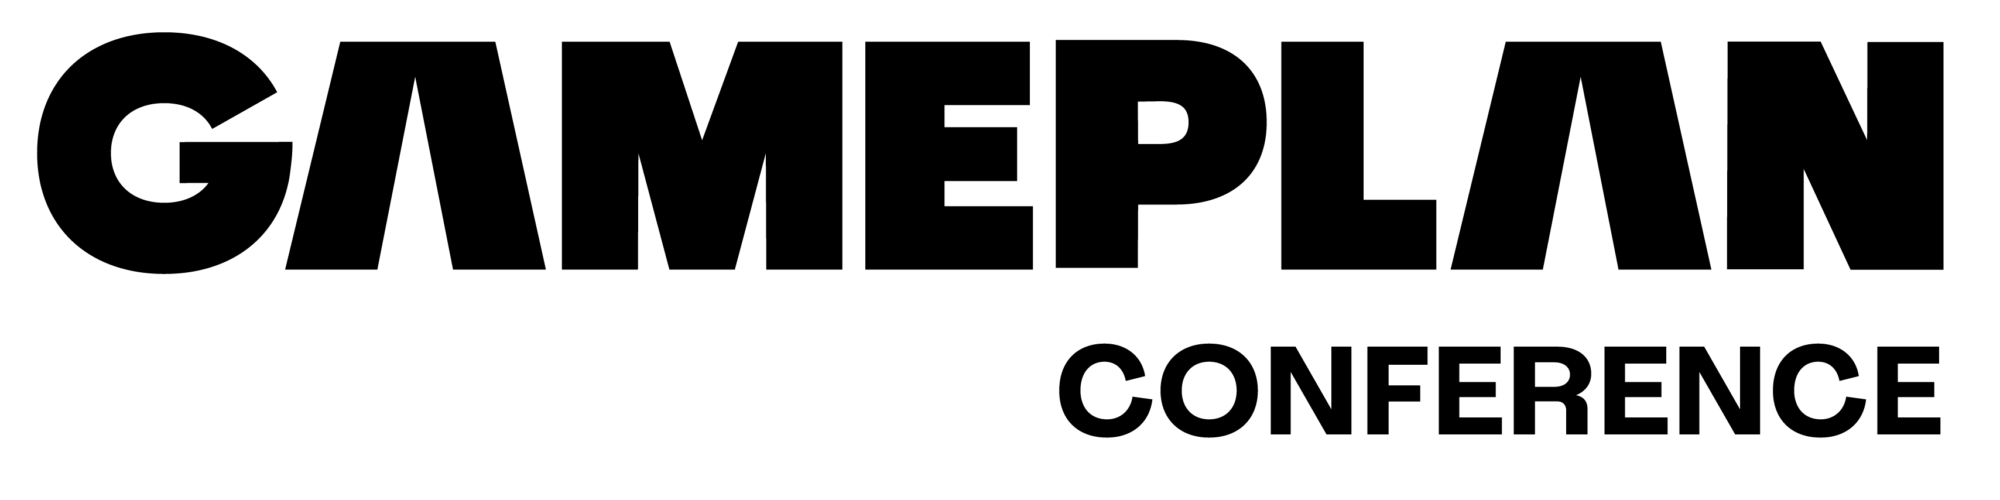 gameplan logo